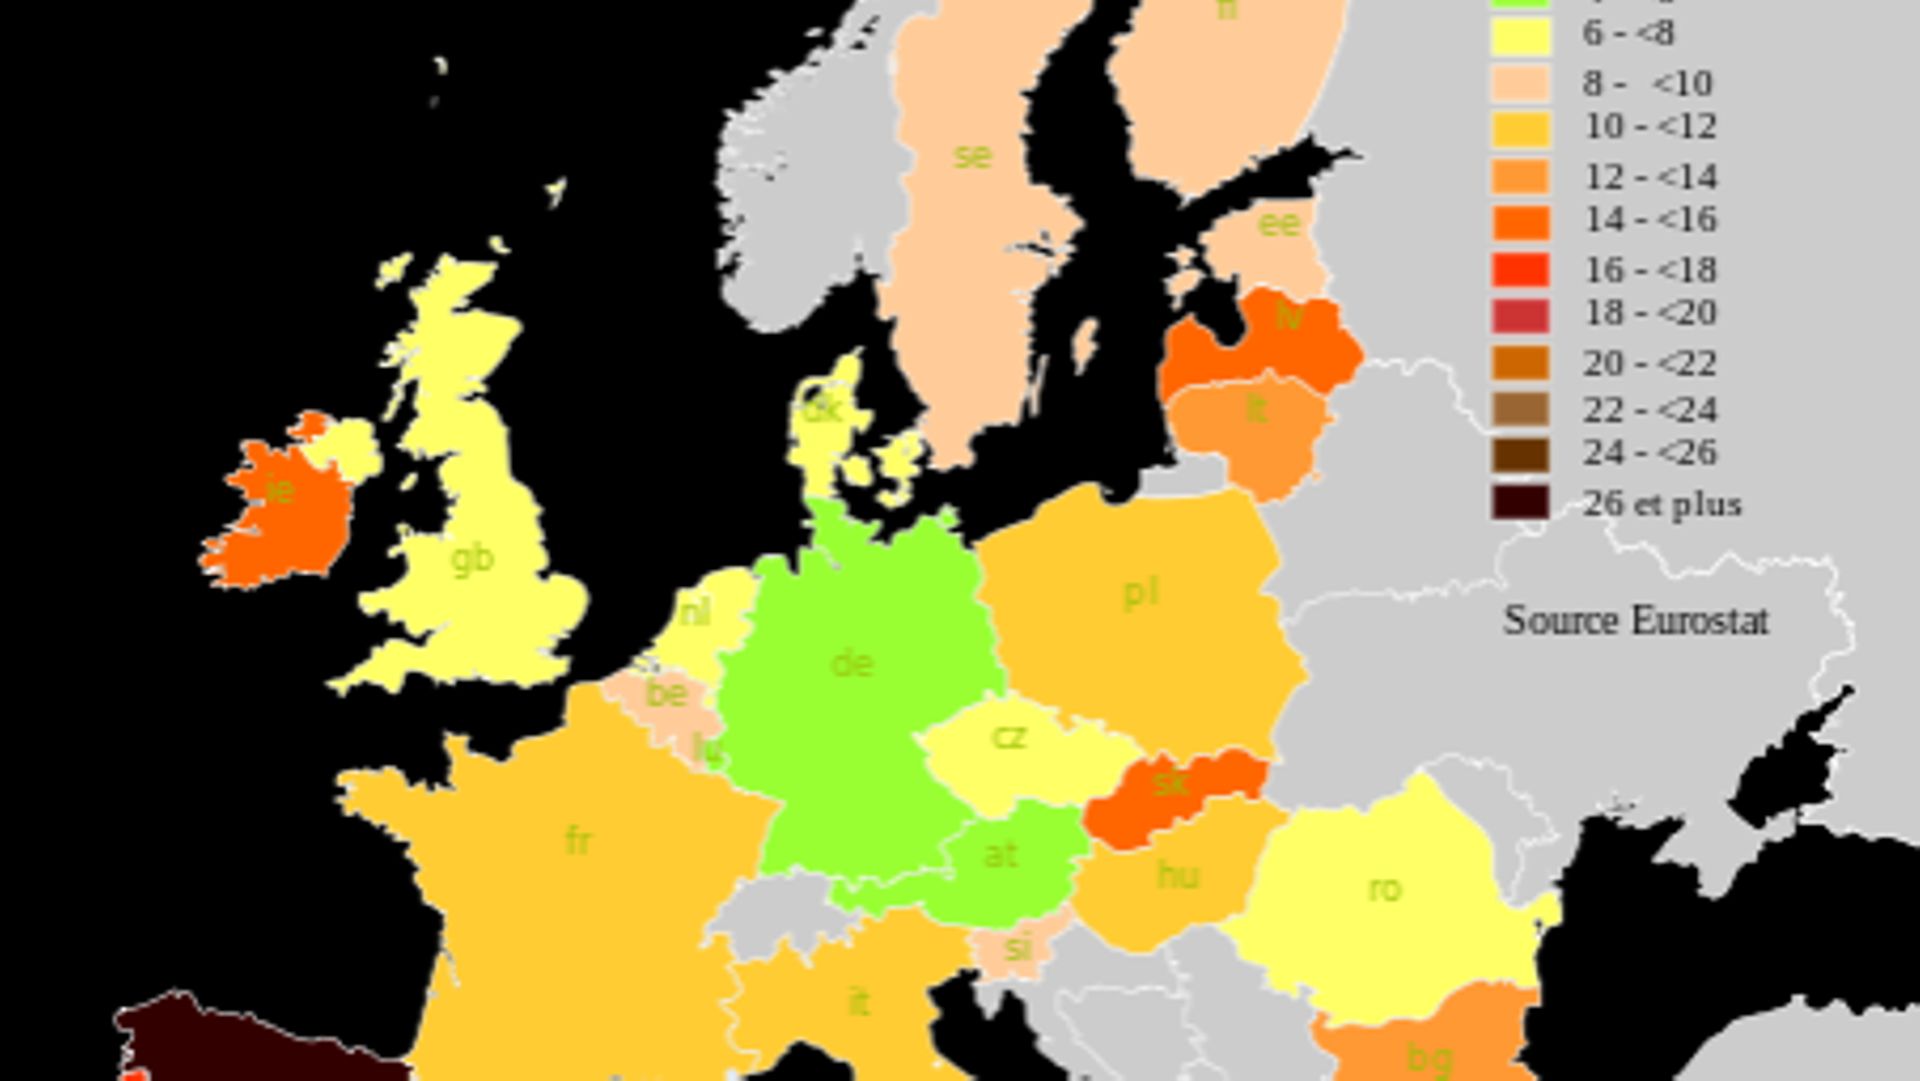 Le Taux de chômage dans l'Union européenne en février 2013